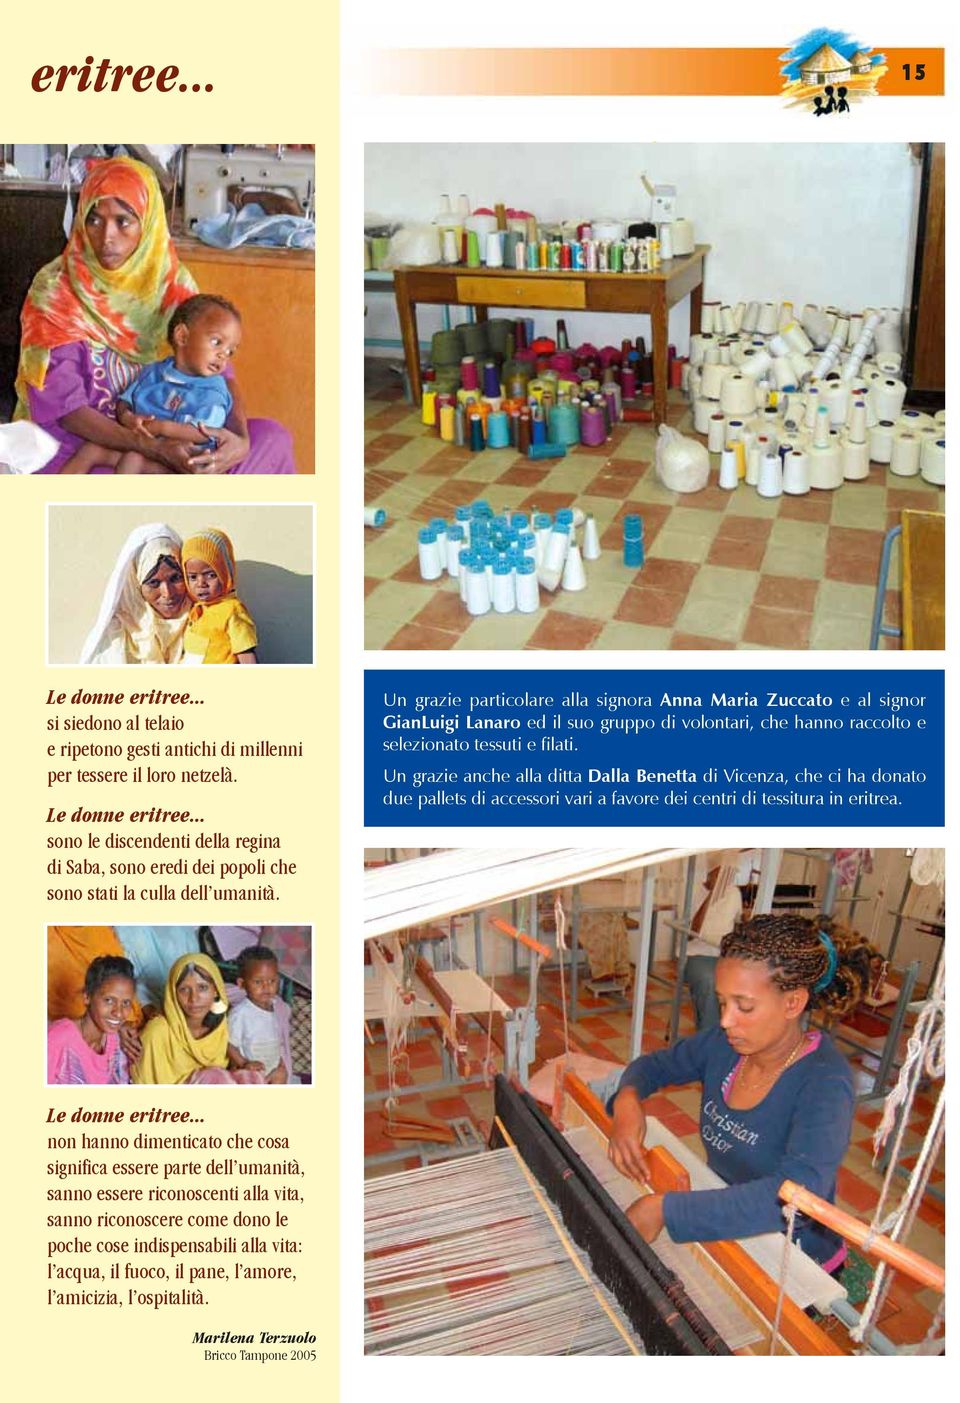 Un grazie anche alla ditta Dalla Benetta di Vicenza, che ci ha donato due pallets di accessori vari a favore dei centri di tessitura in eritrea. Le donne eritree.